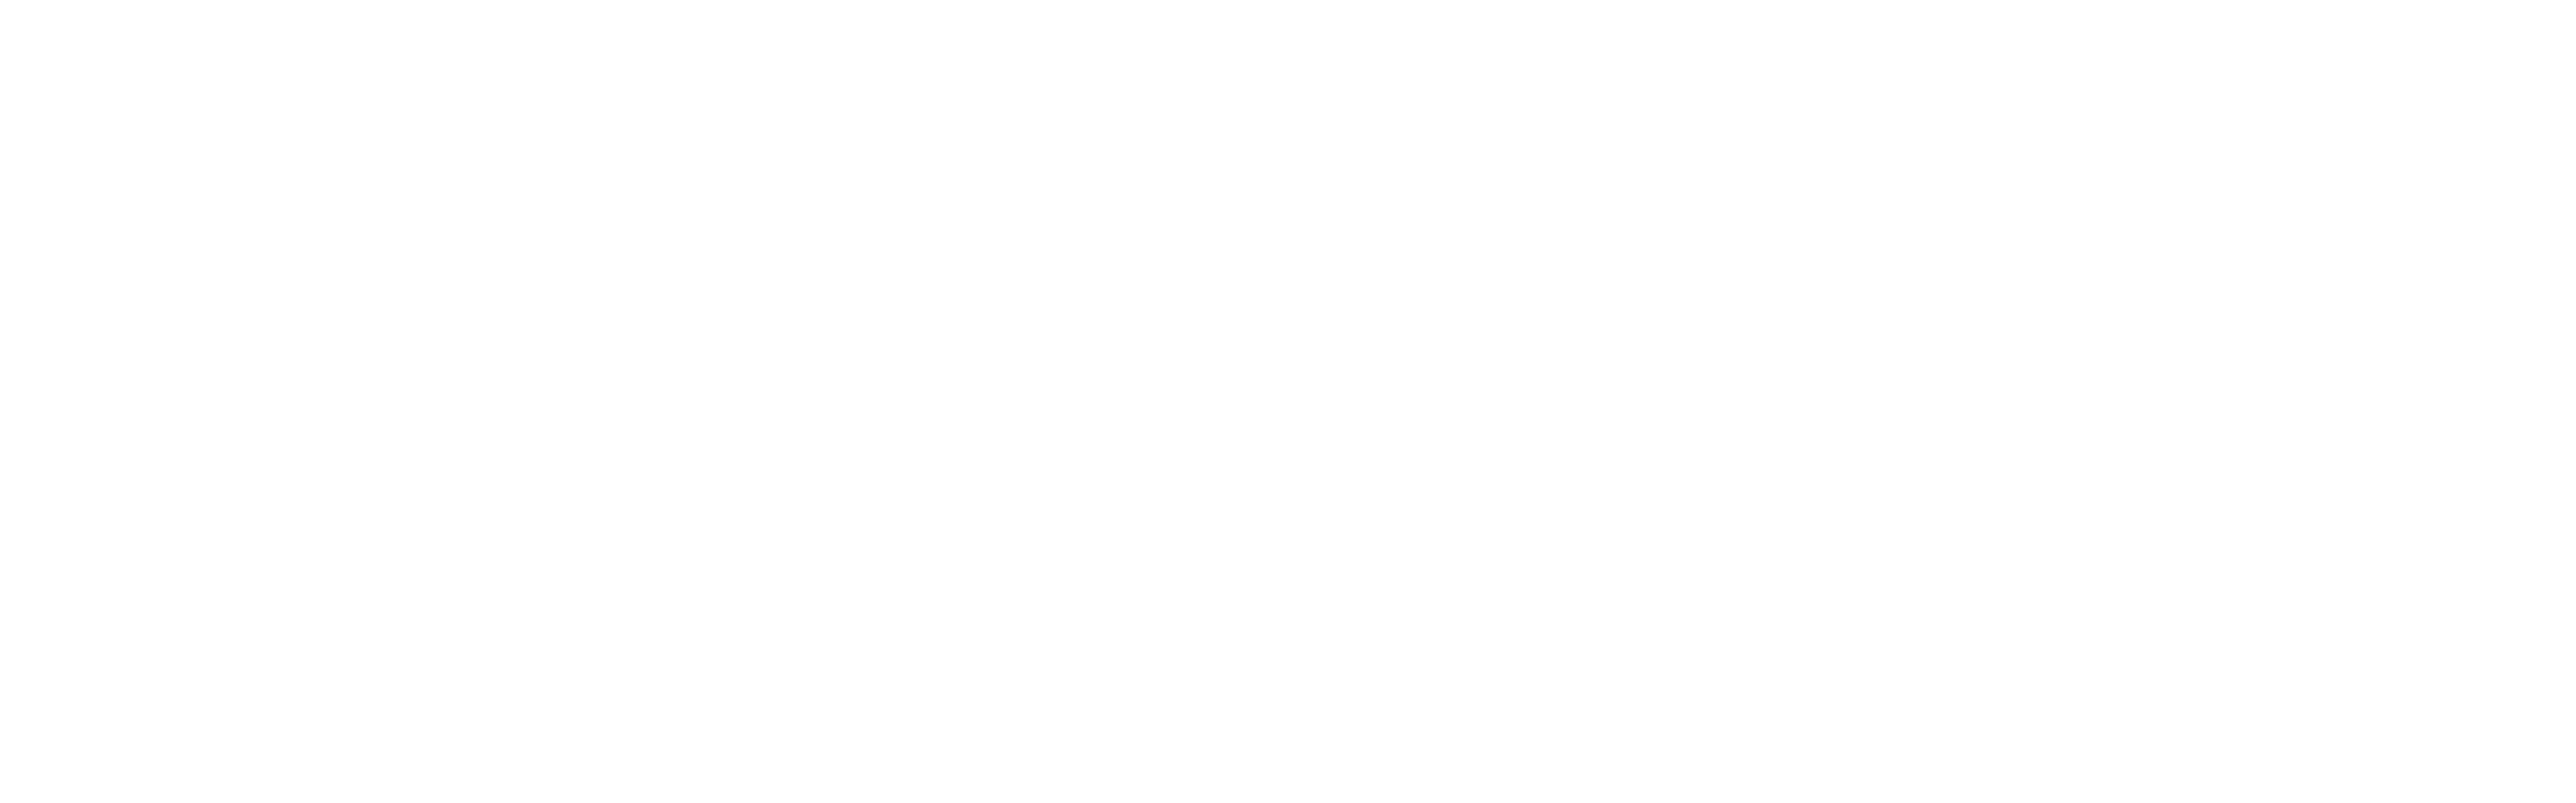 Range® Meat Academy